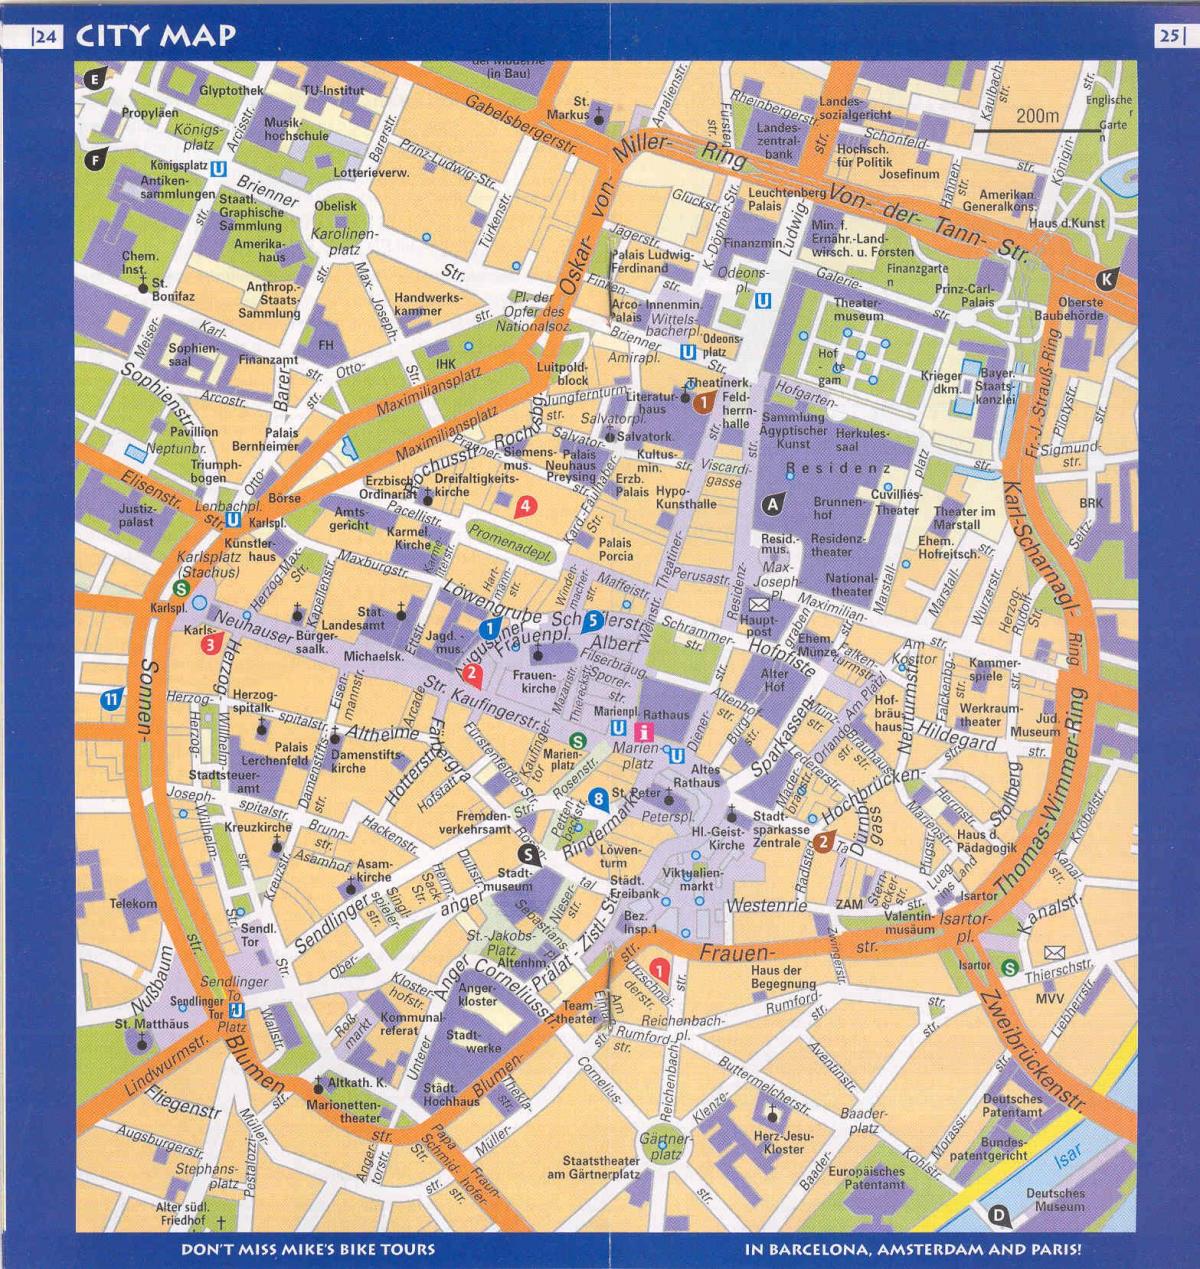 Χάρτης της πόλης: μόναχο κέντρο